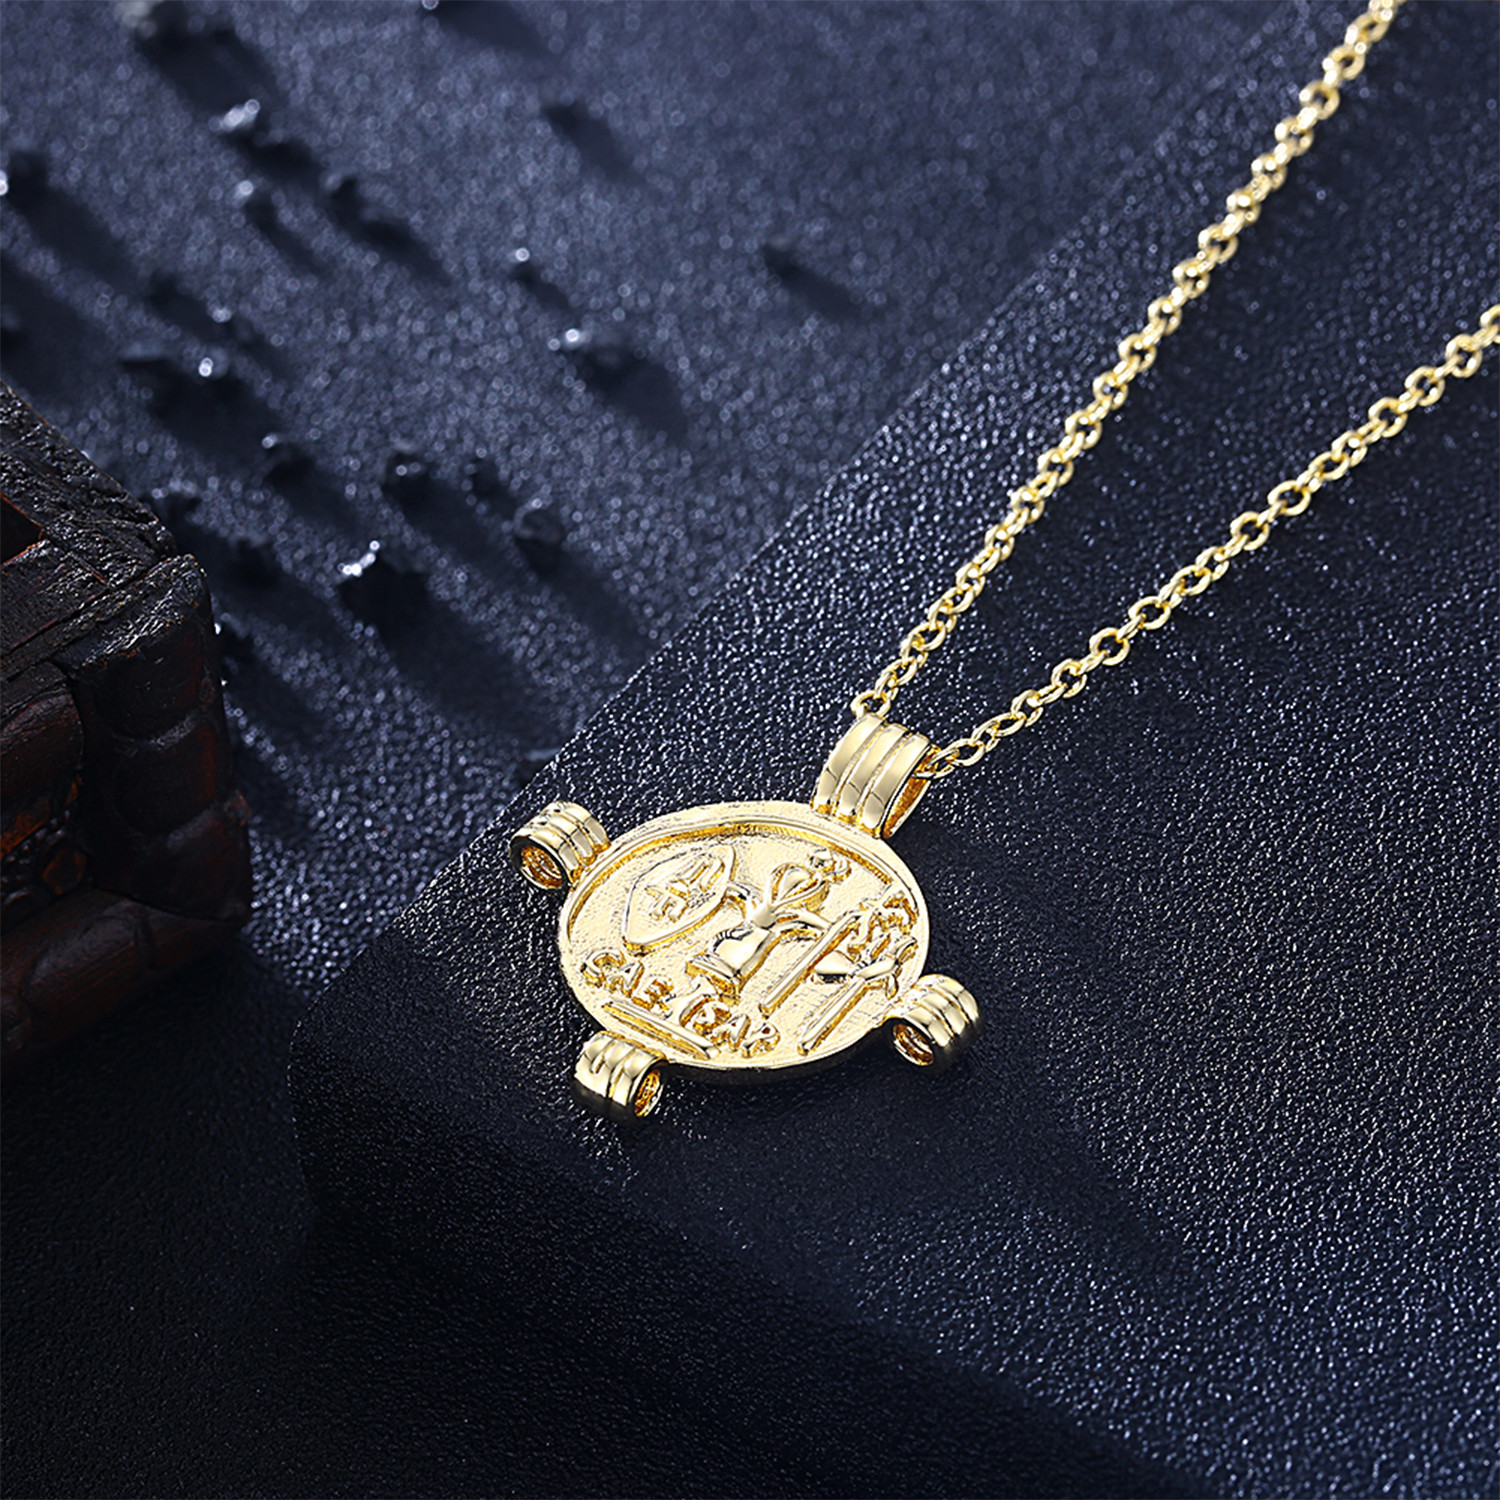 Ancient Roman Design Pendant Necklace // 14K Gold Plated - Rubique ...